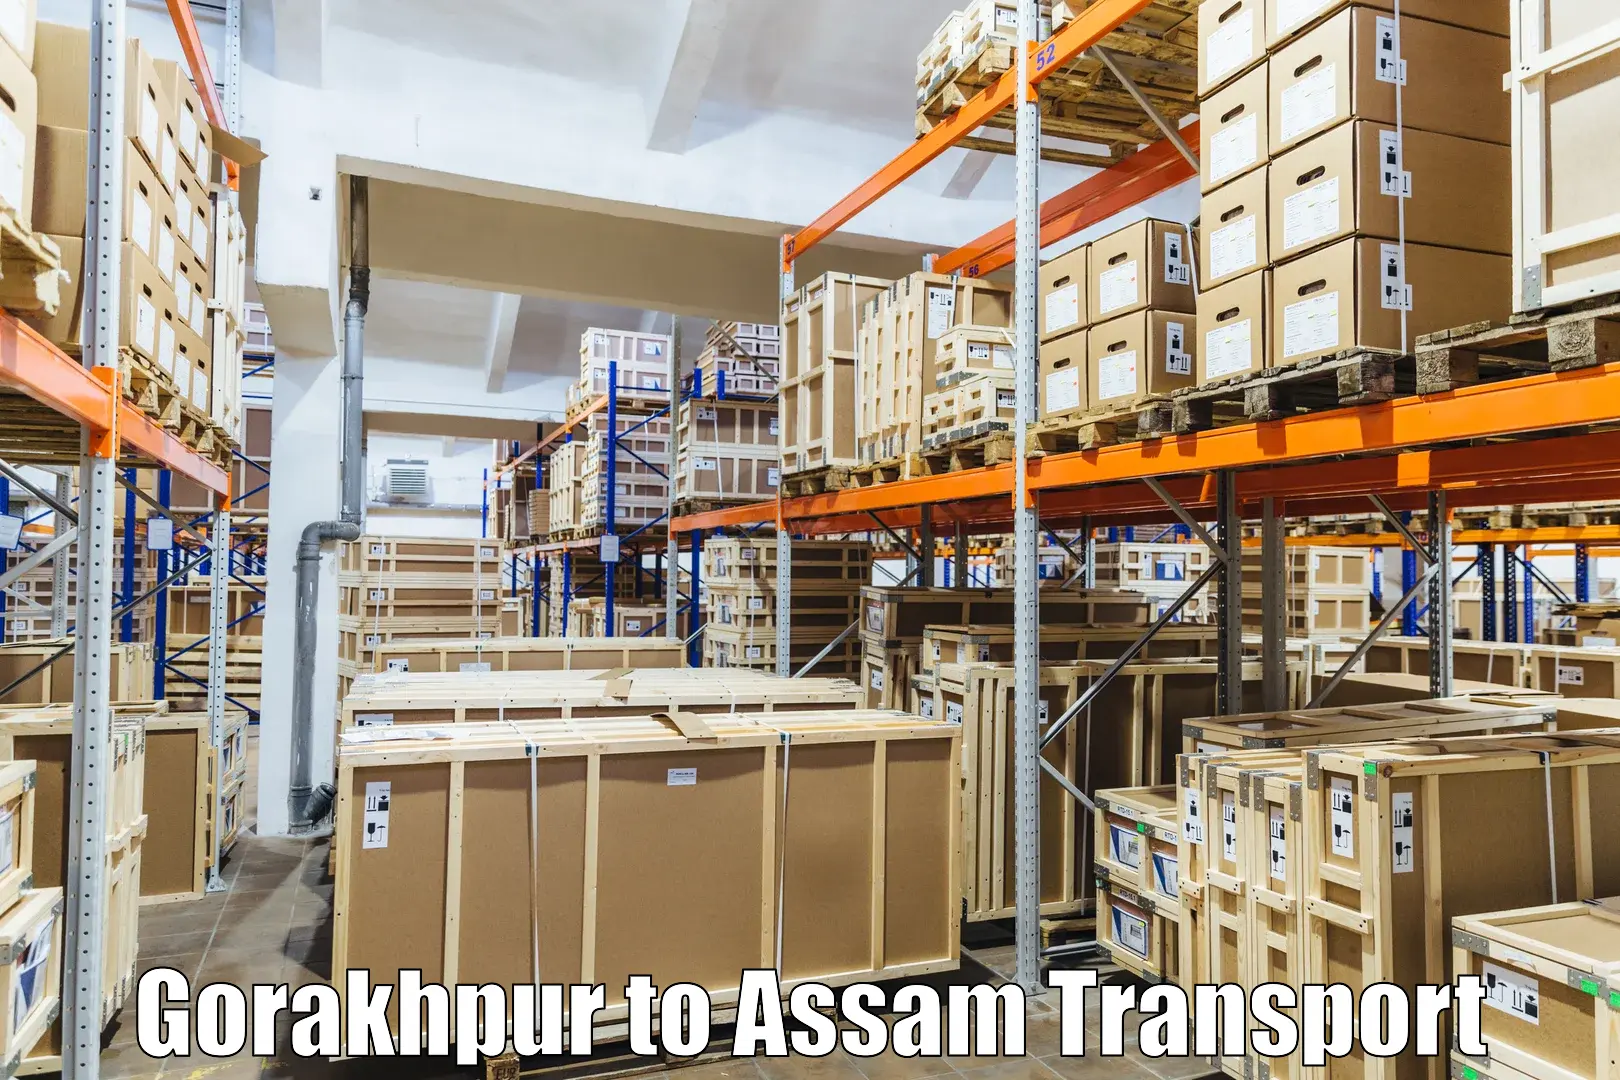 Shipping partner Gorakhpur to Assam